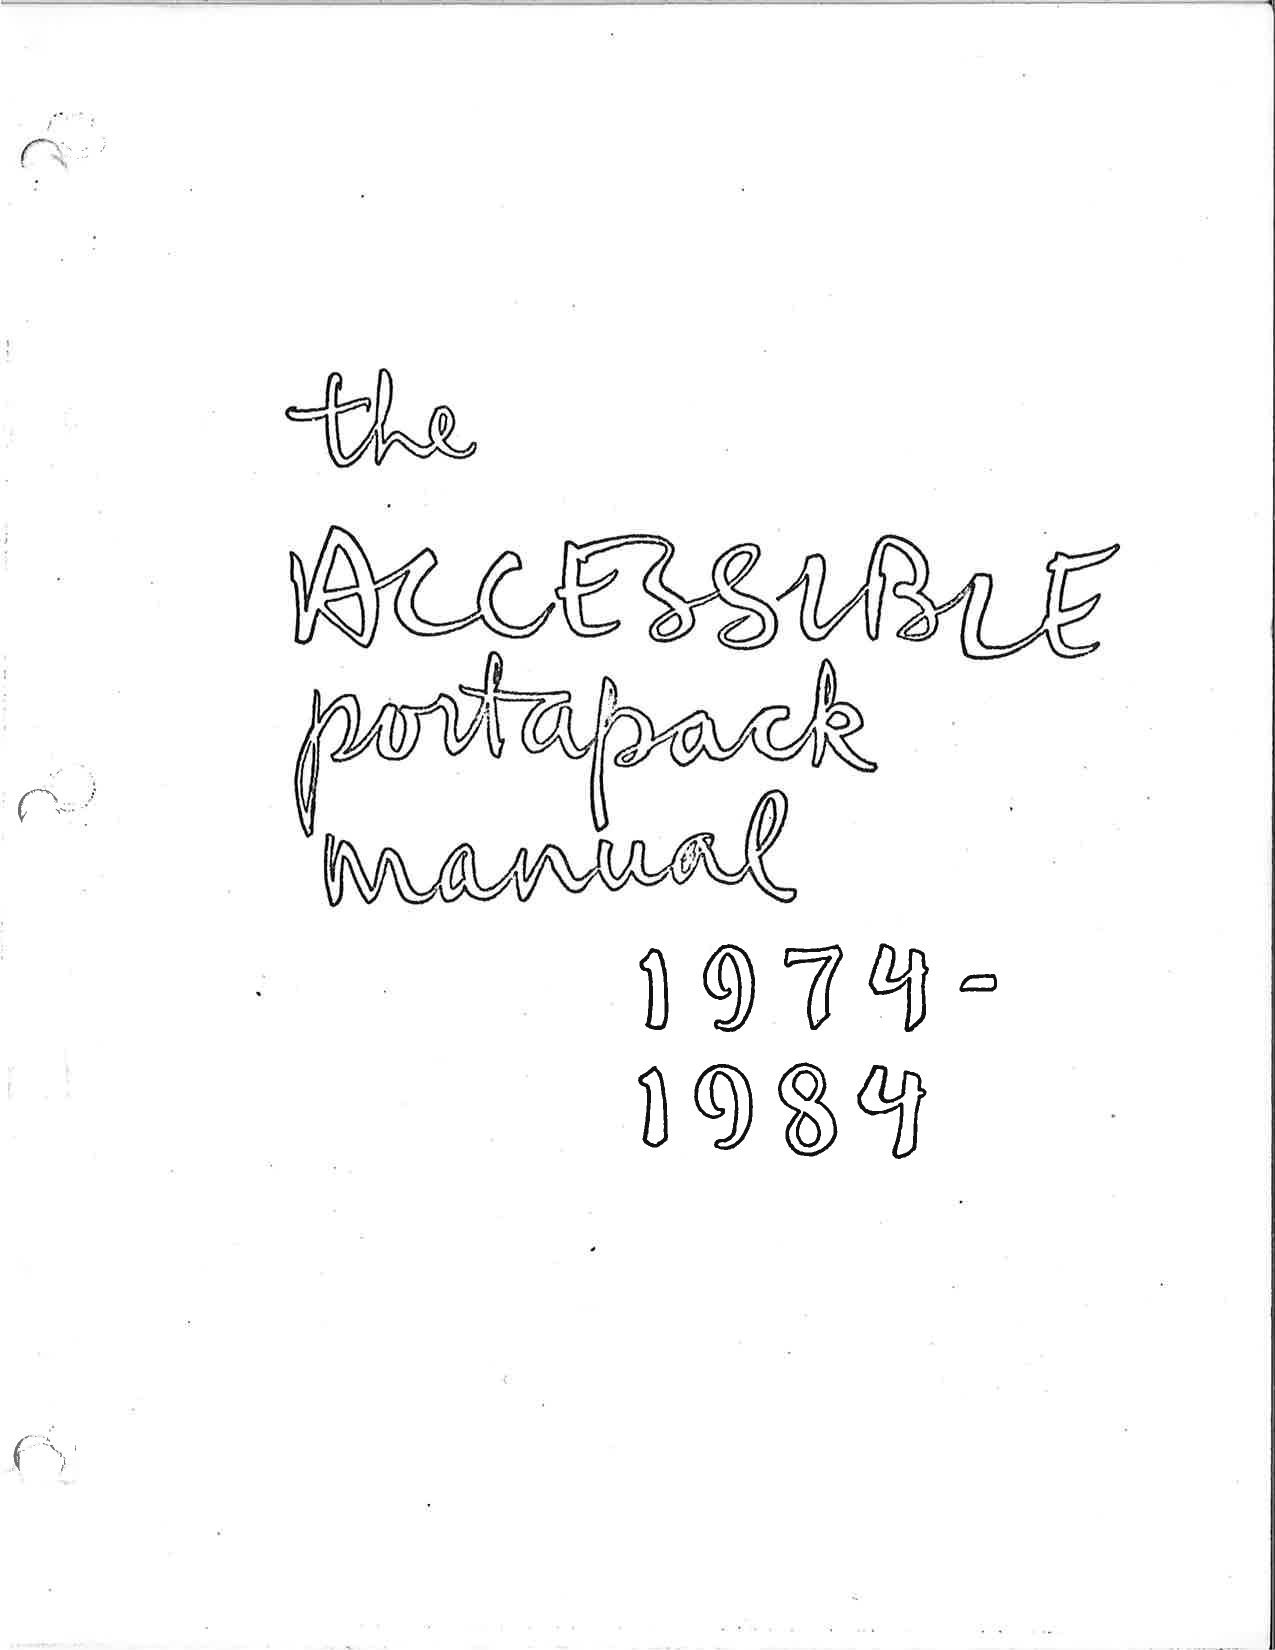 Première page du manuel du Portapak. La page est blanche à l’exception d’un titre manuscrit The Accessible Portapak Manual 1974-1984